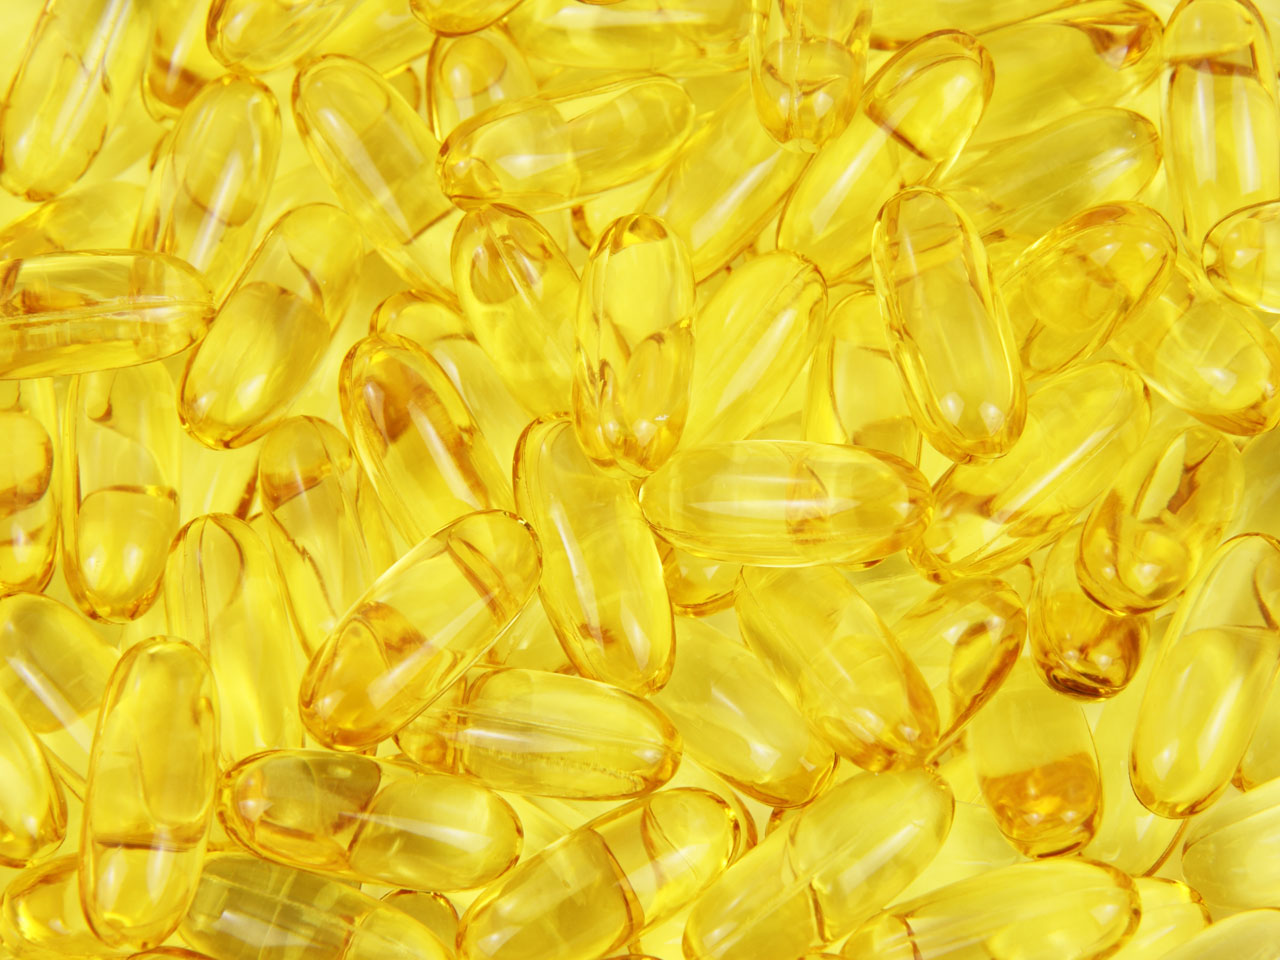 Gentlemen, fish oil supplements may benefit your balls - Scimex